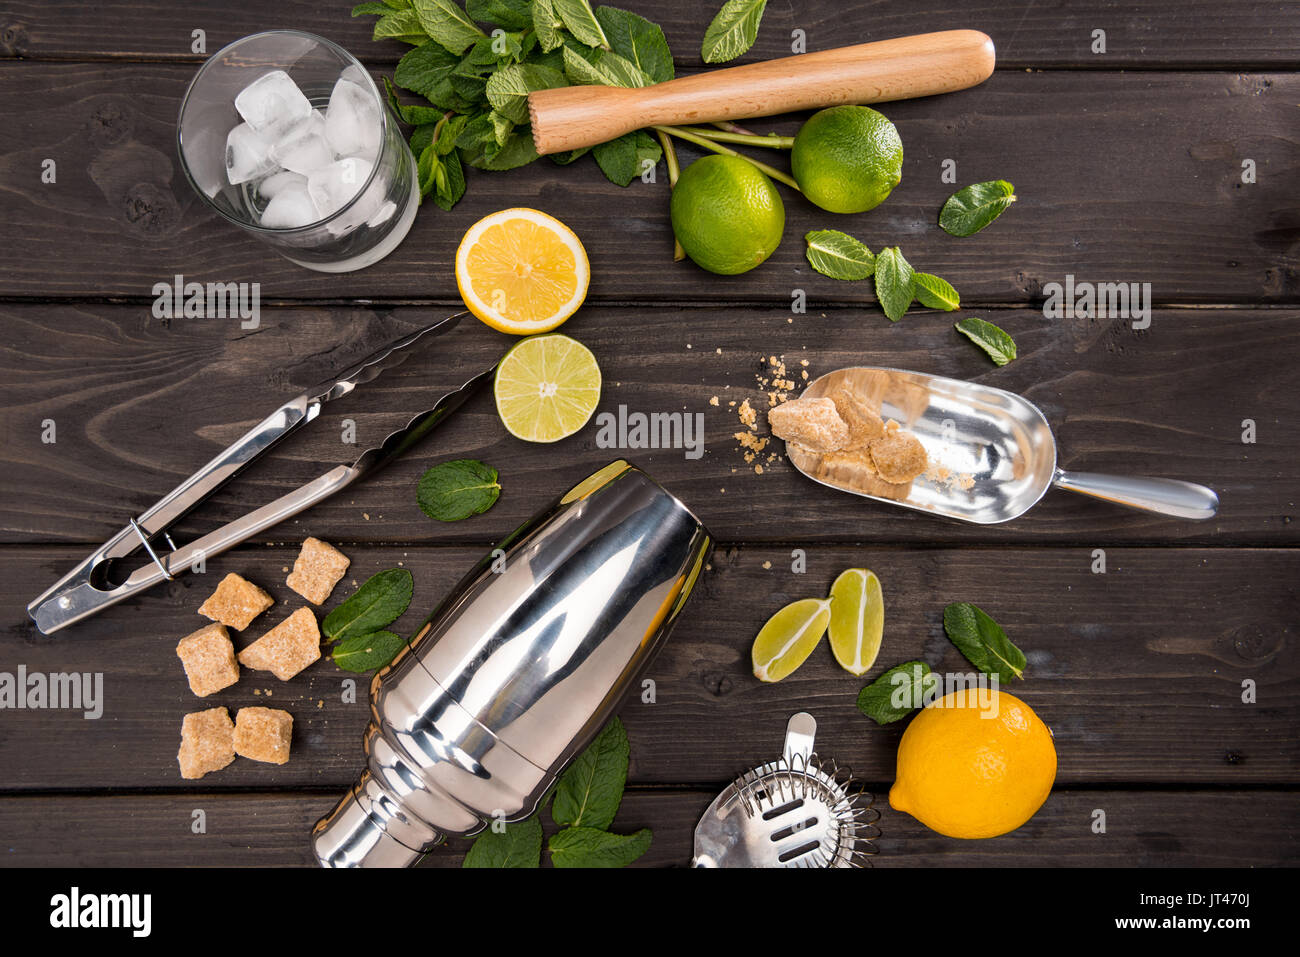 Blick von oben auf die Mojito cocktail Zutaten und Utensilien auf hölzernen Tischplatte, cocktail Getränke Konzept Stockfoto